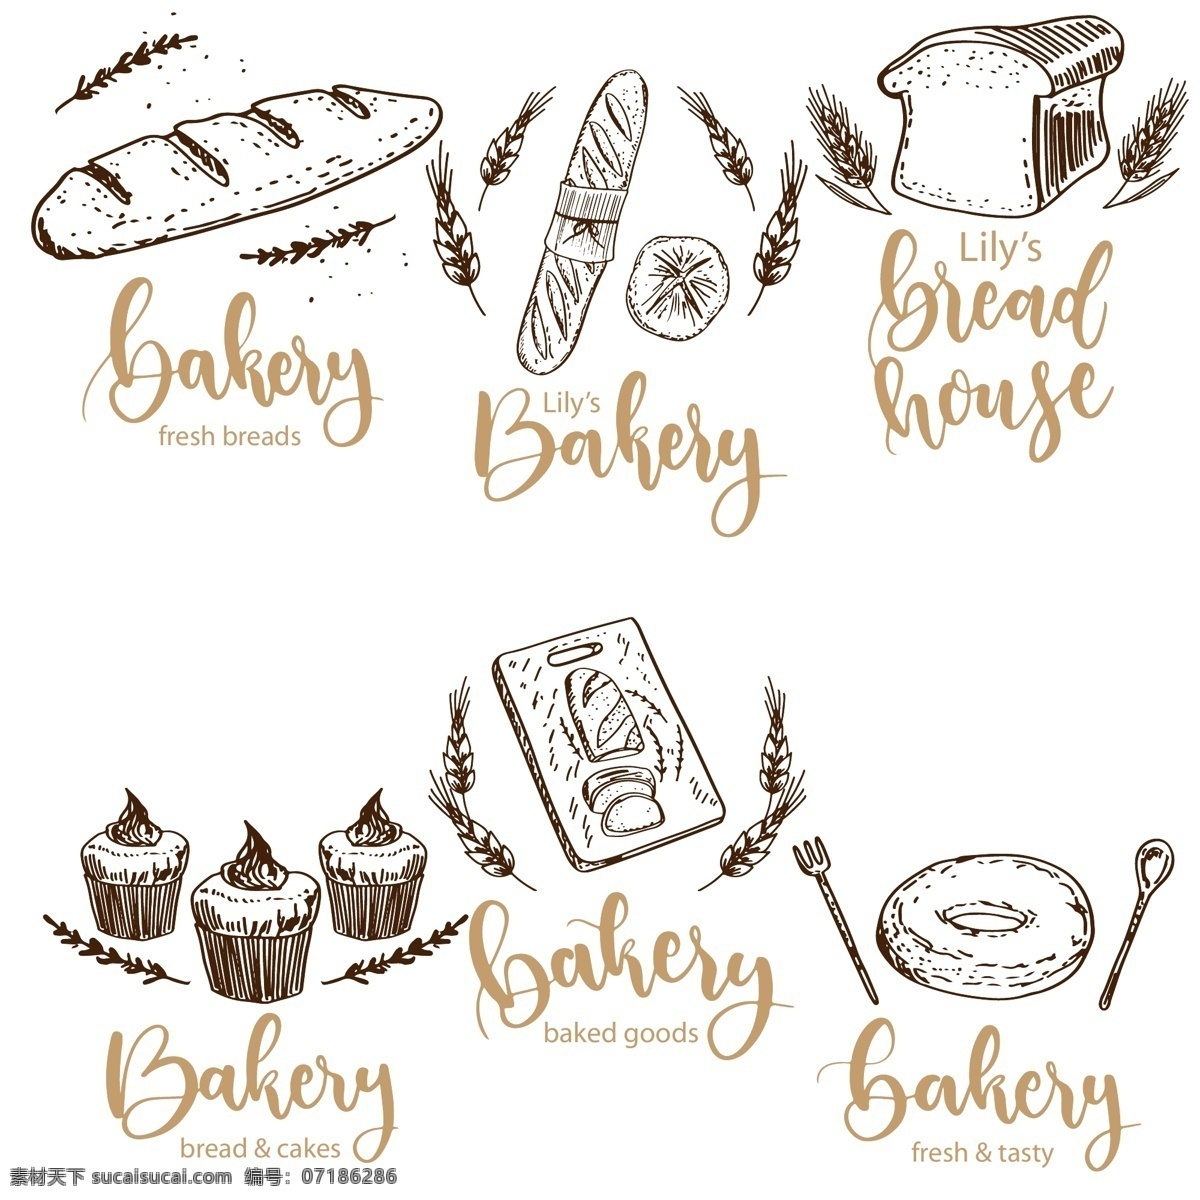 素描 面包店 标志 插画 蛋糕 甜点 矢量素材 手绘 咖啡店 食品标志